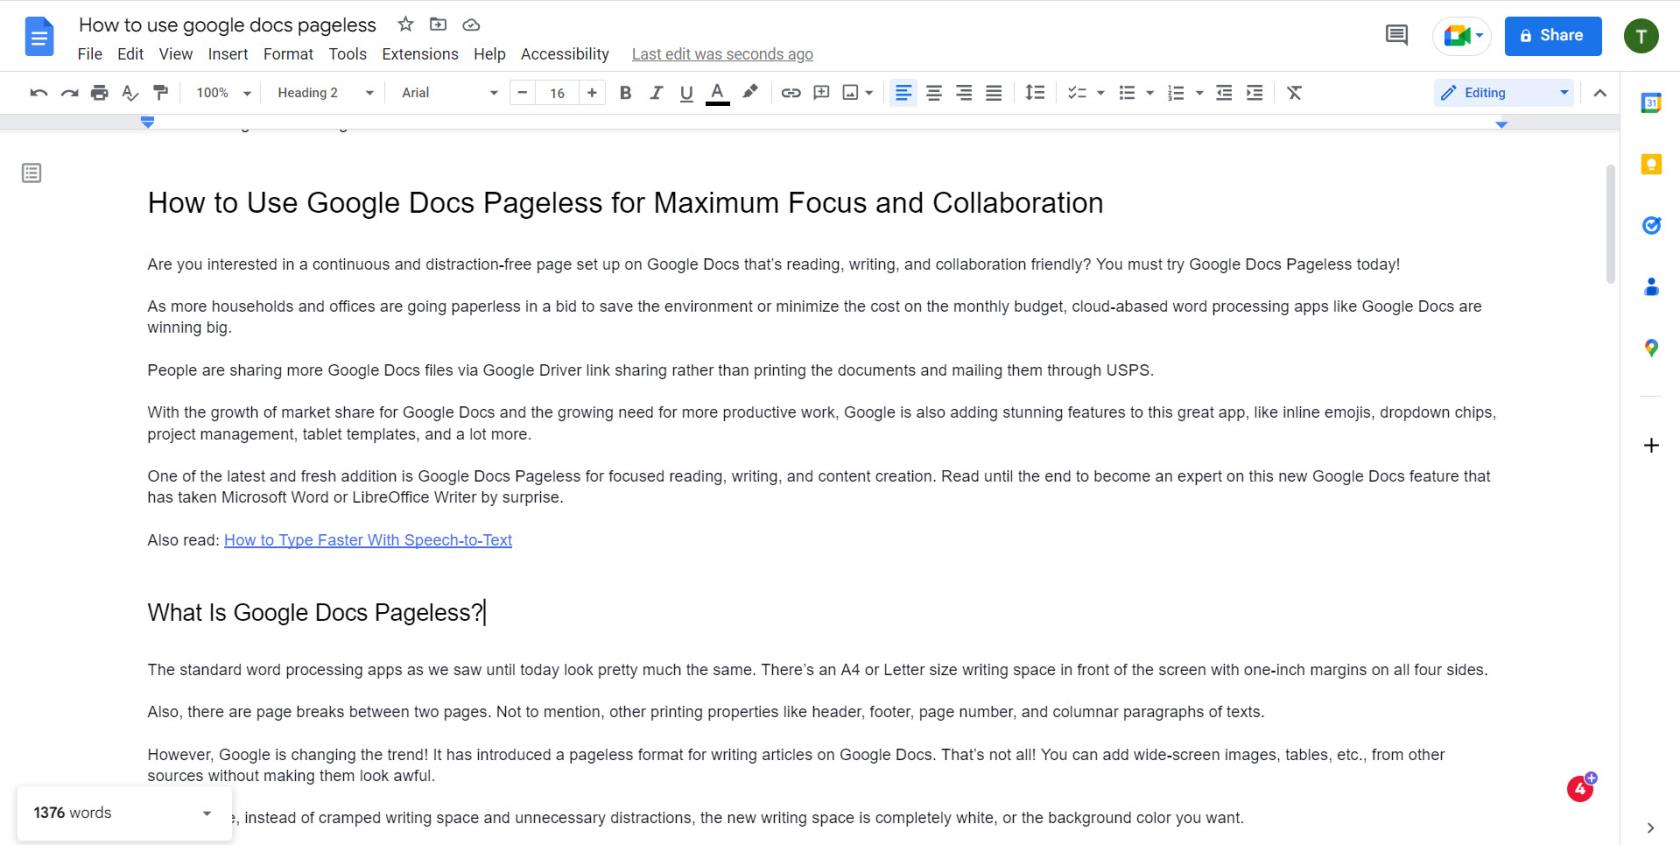 Cum să utilizați Google Docs fără pagină pentru concentrare și colaborare maximă